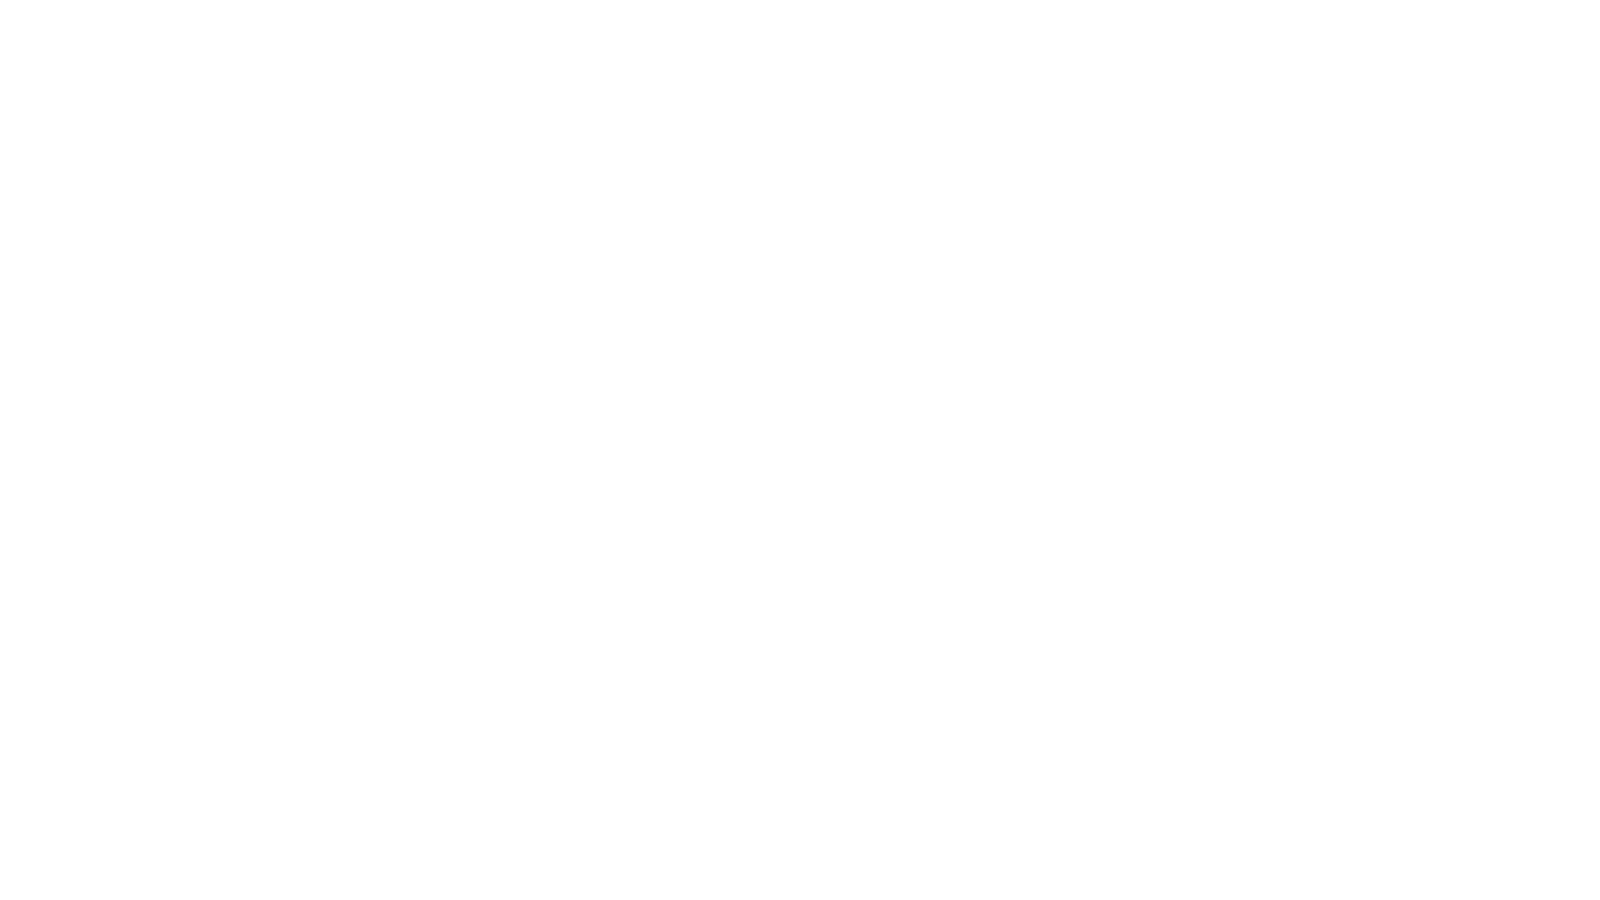 РФ, г. Волгоград - РФ, село Быков Отрог, Саратовская область

Гусеничный экскаватор CX220C LC HD (10*3*3,2) 22,6 т.

 